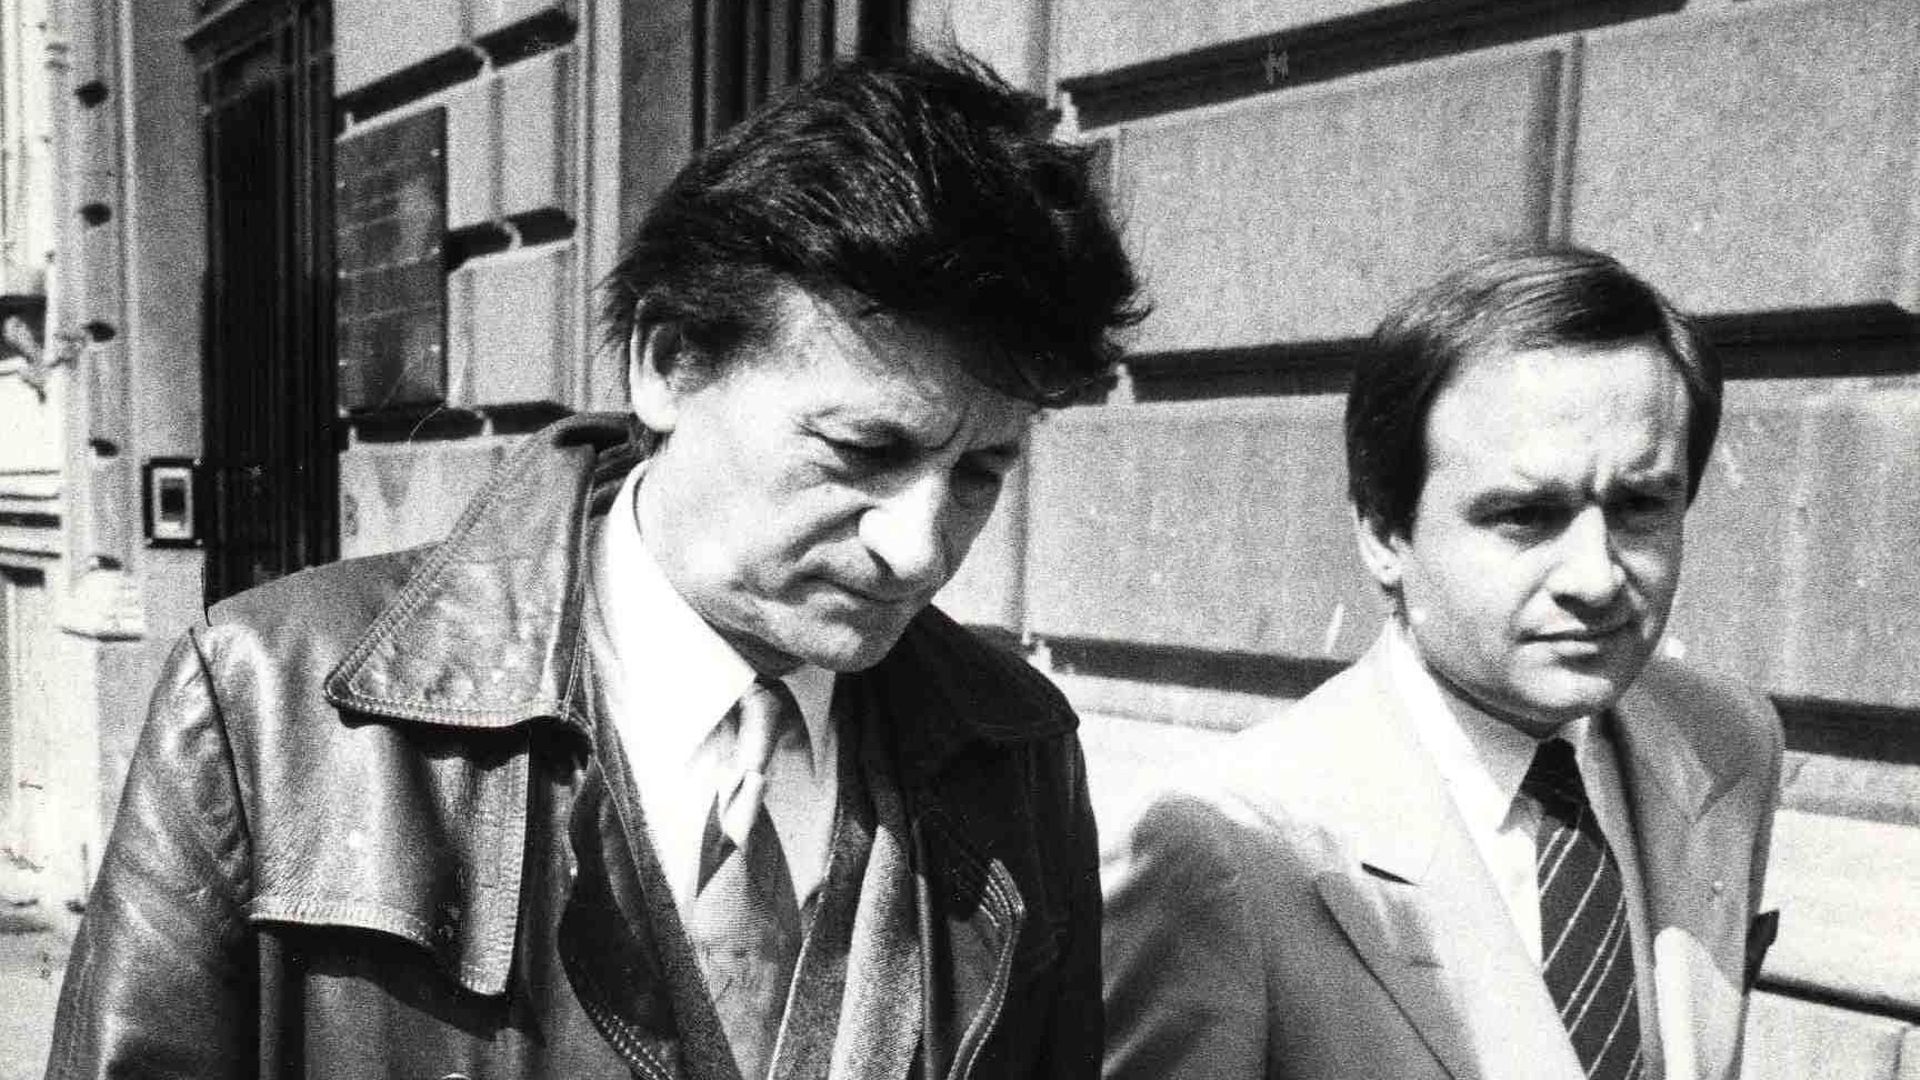 Pas la mine des grands jours le Raymond! Raymond Goethals et son avocat après une convocation à l’union belge en 1984.